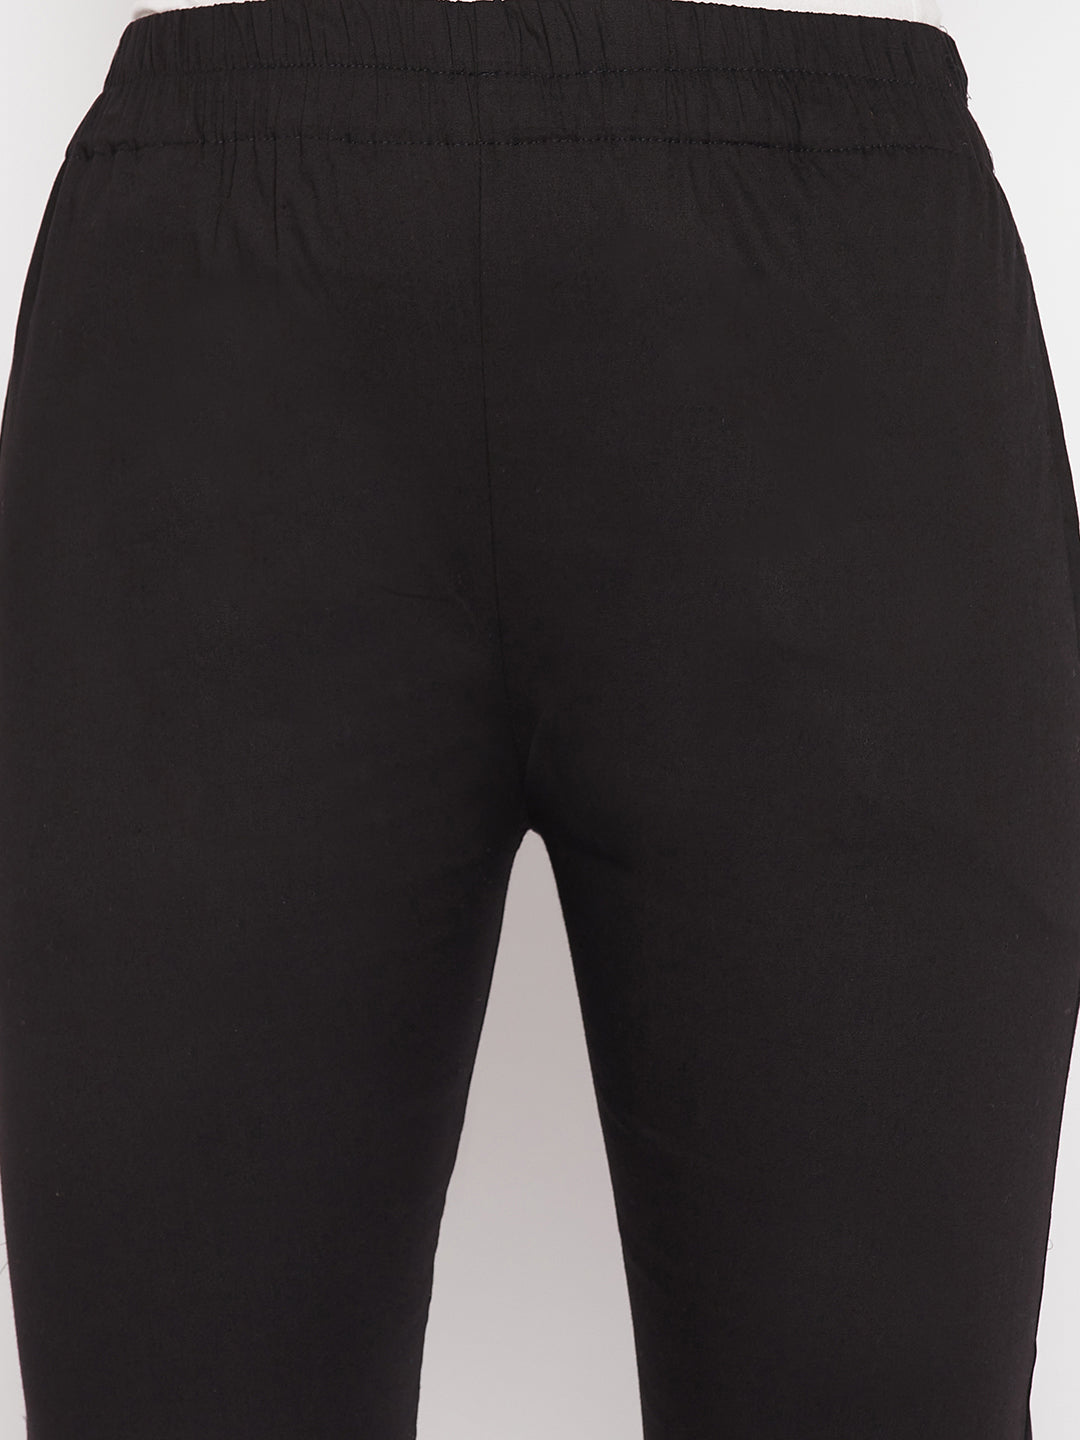 Clora Black Solid Cotton Lycra Pant